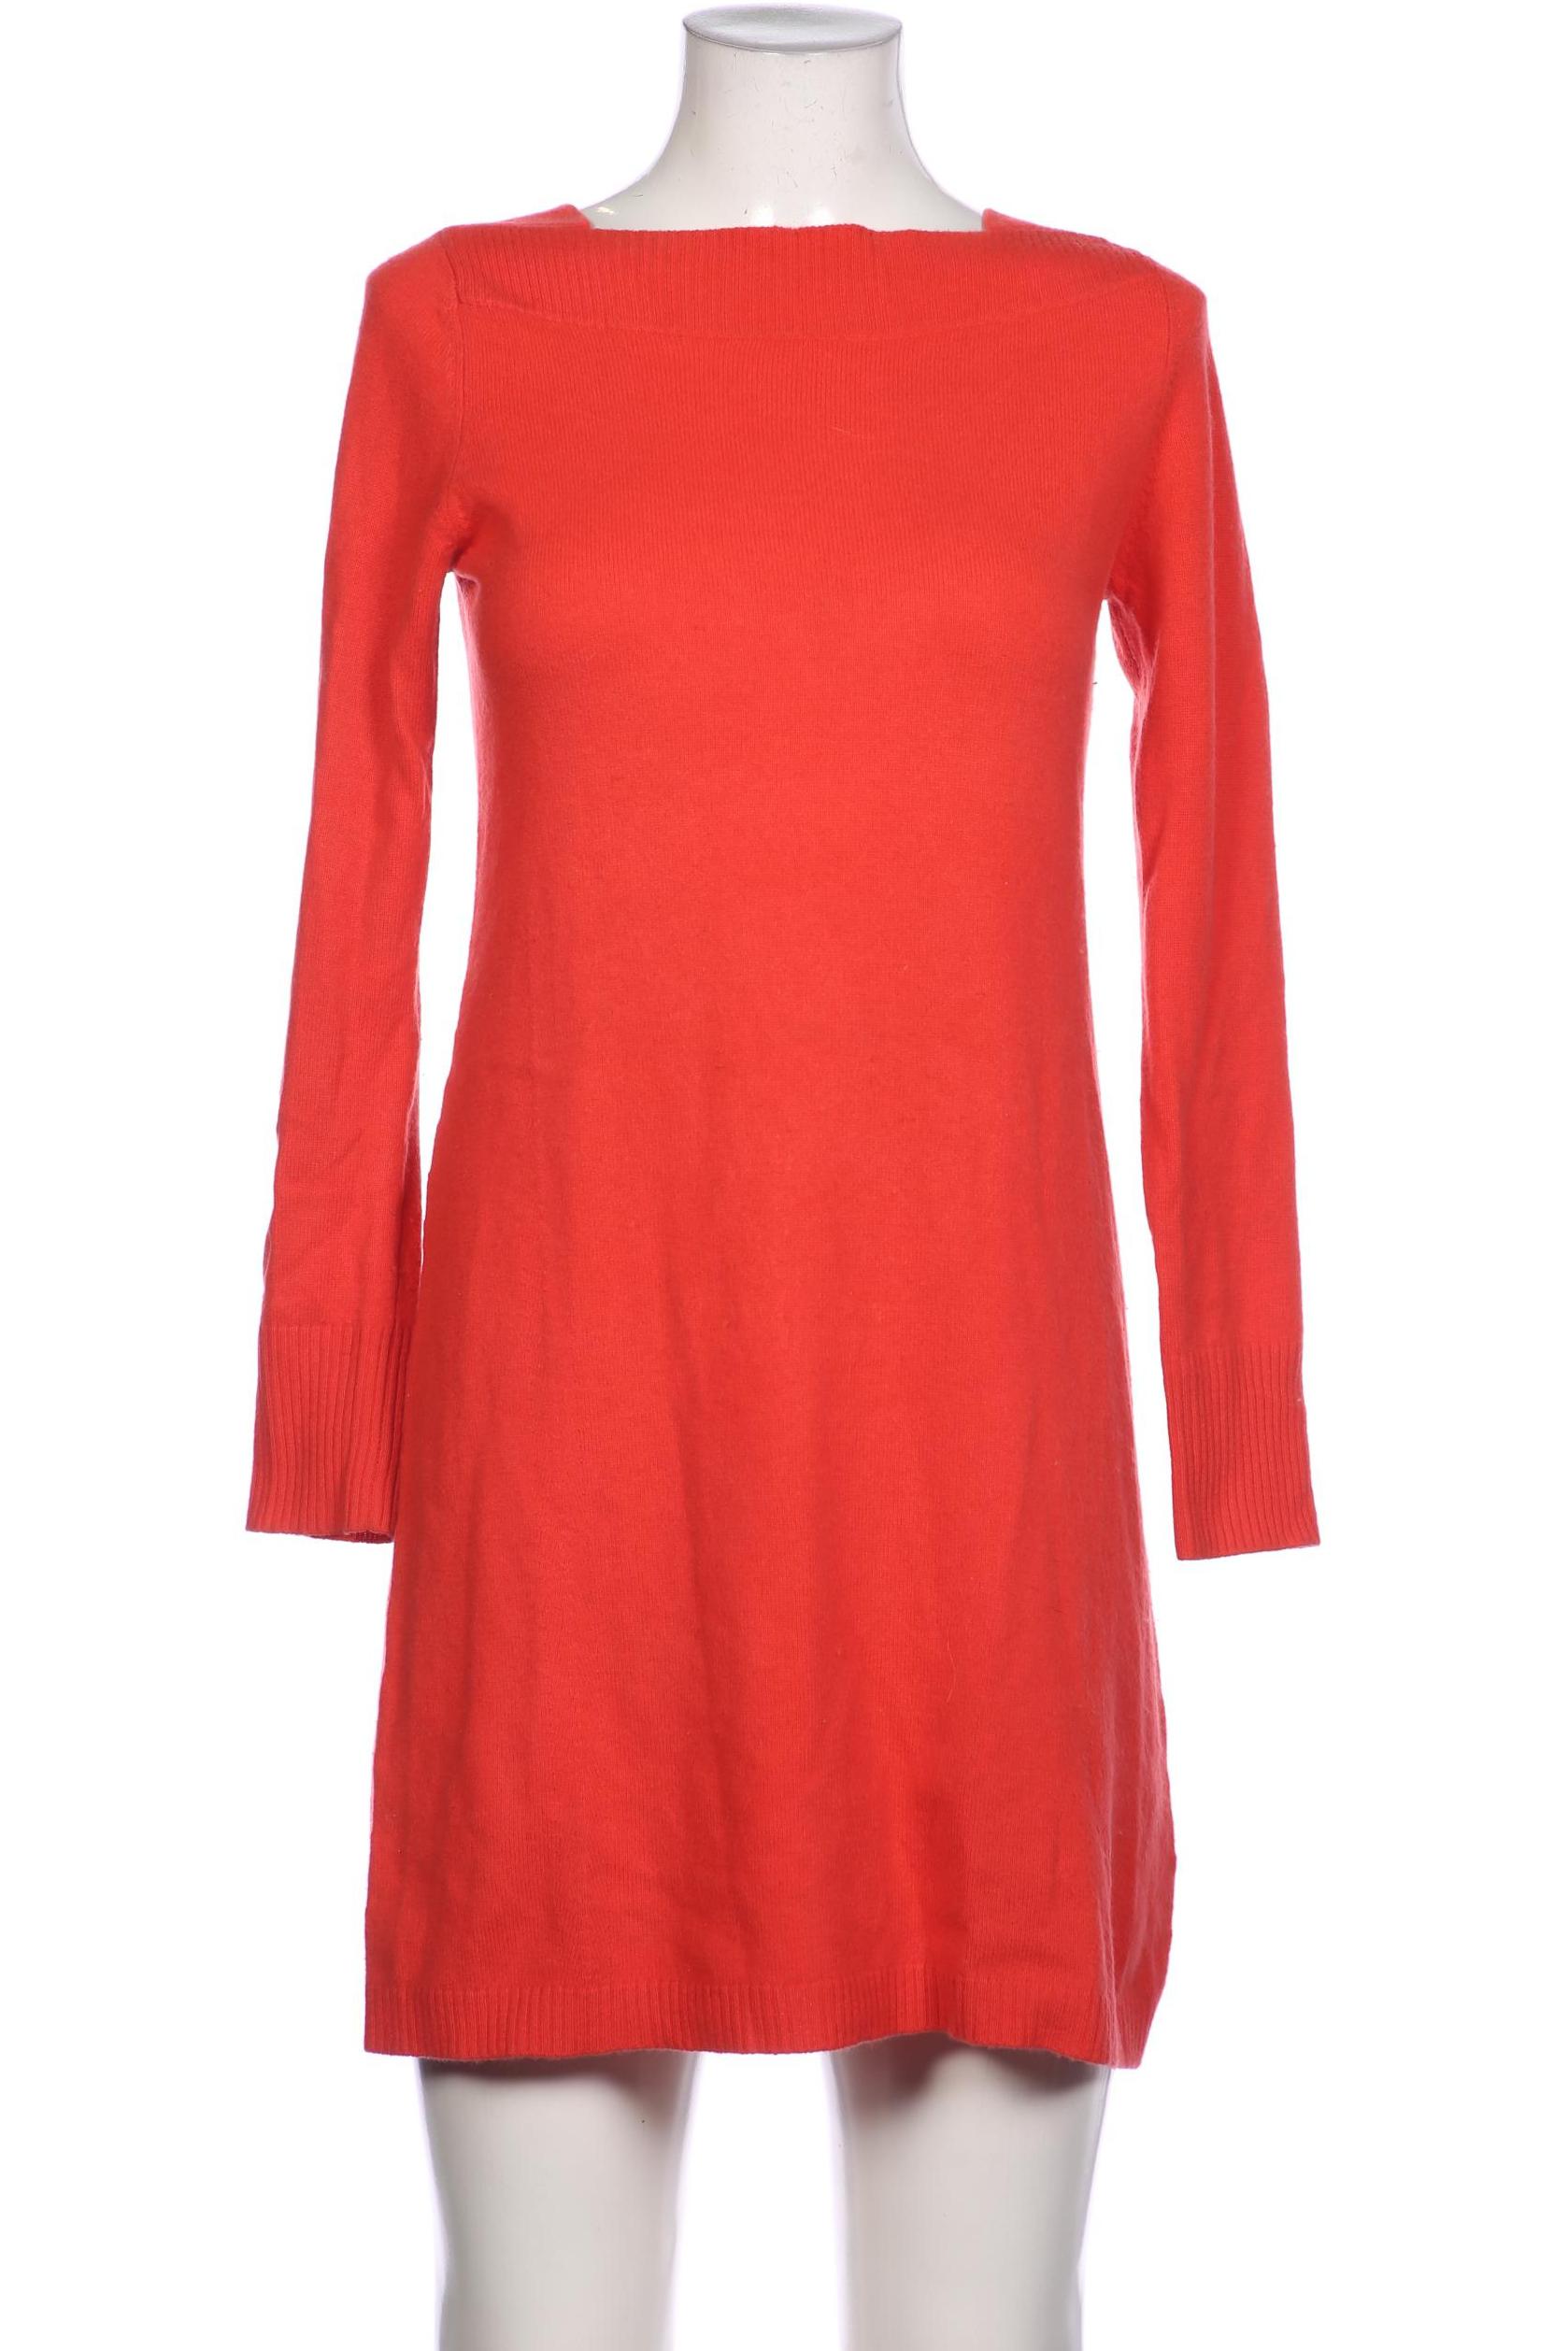 FTC Cashmere Damen Kleid, rot, Gr. 36 von FTC Cashmere